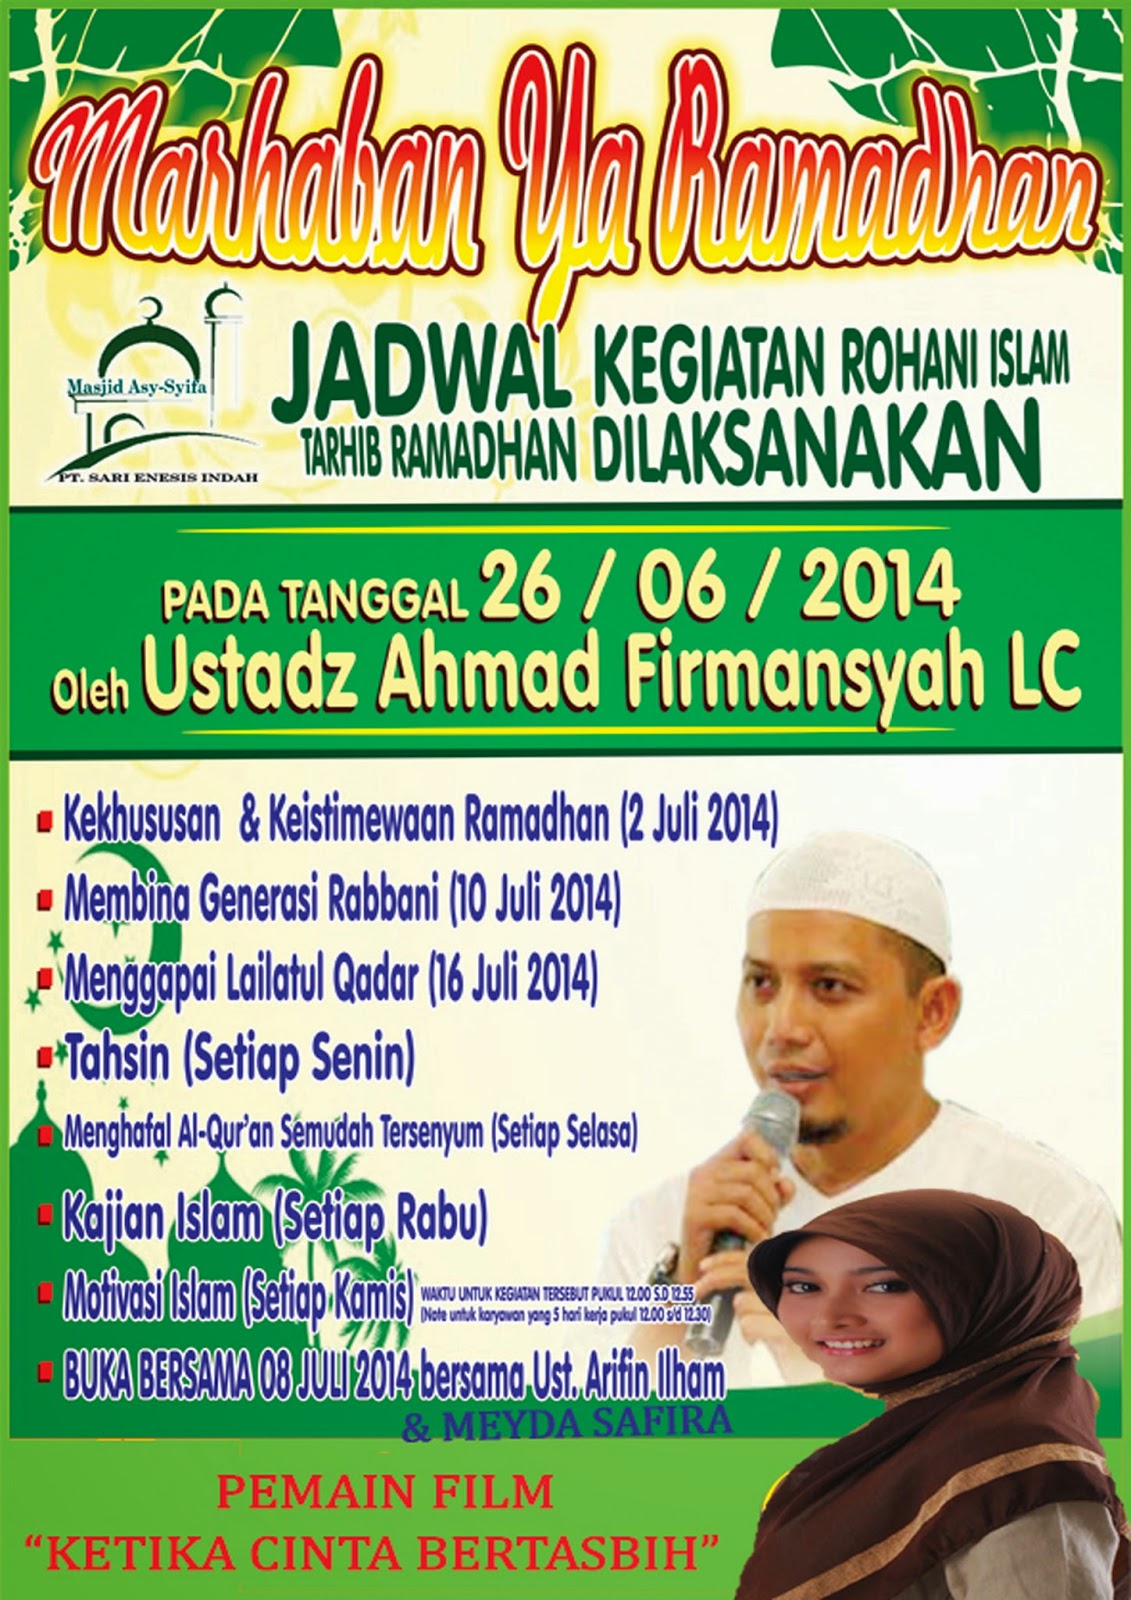 DKM ASY-SYIFA: pamflet acara ramadhan